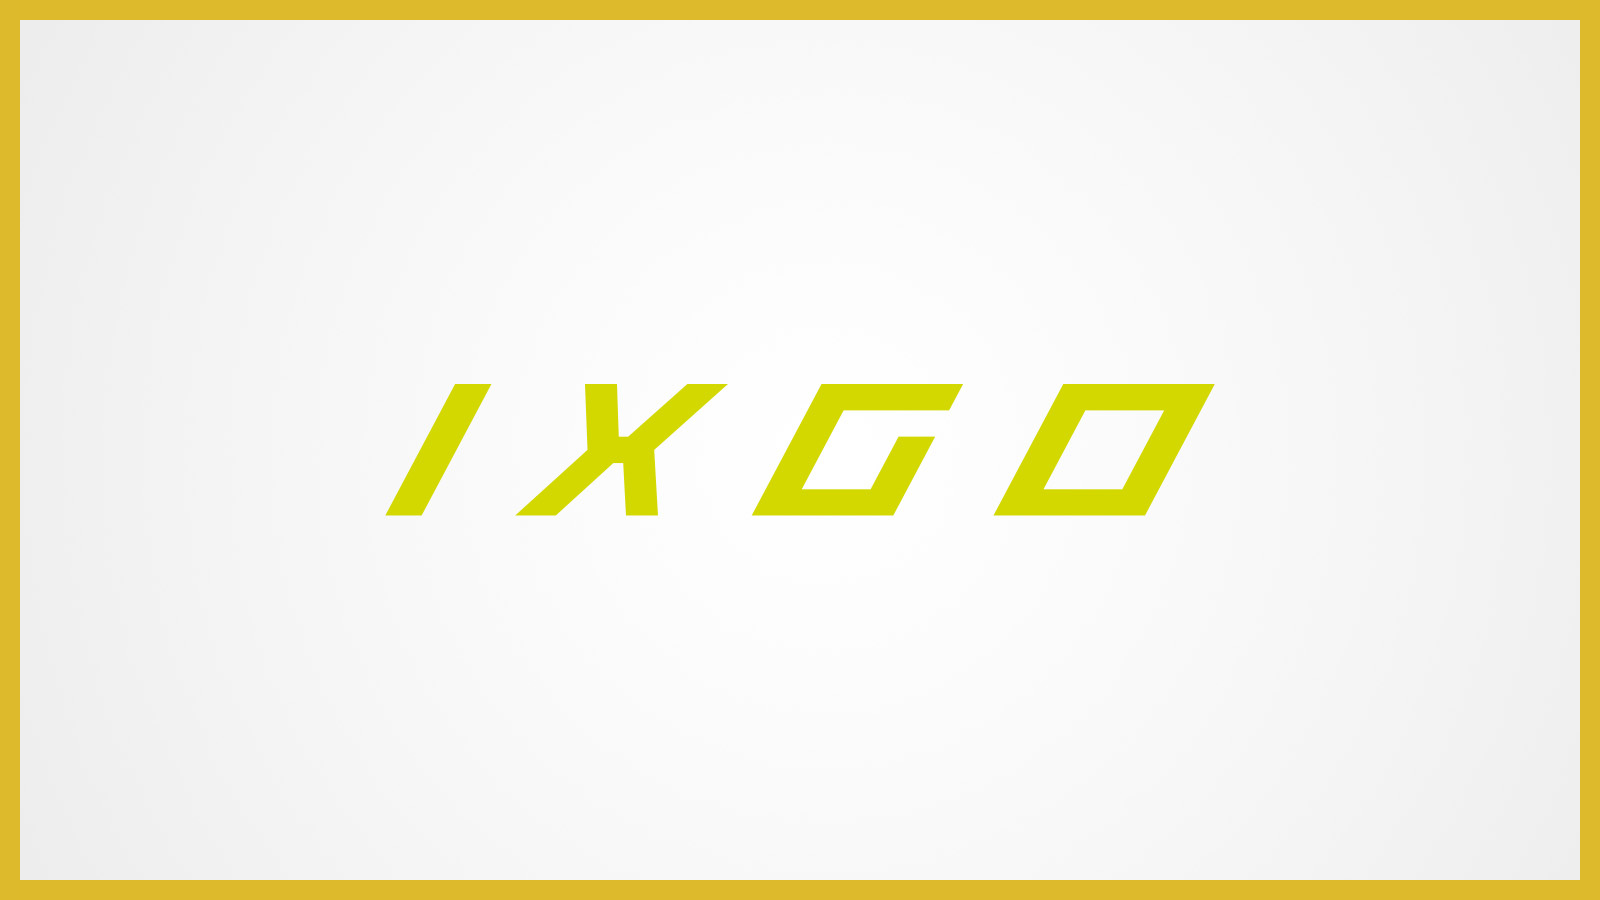 IXGO-Bikes - Express Yourself